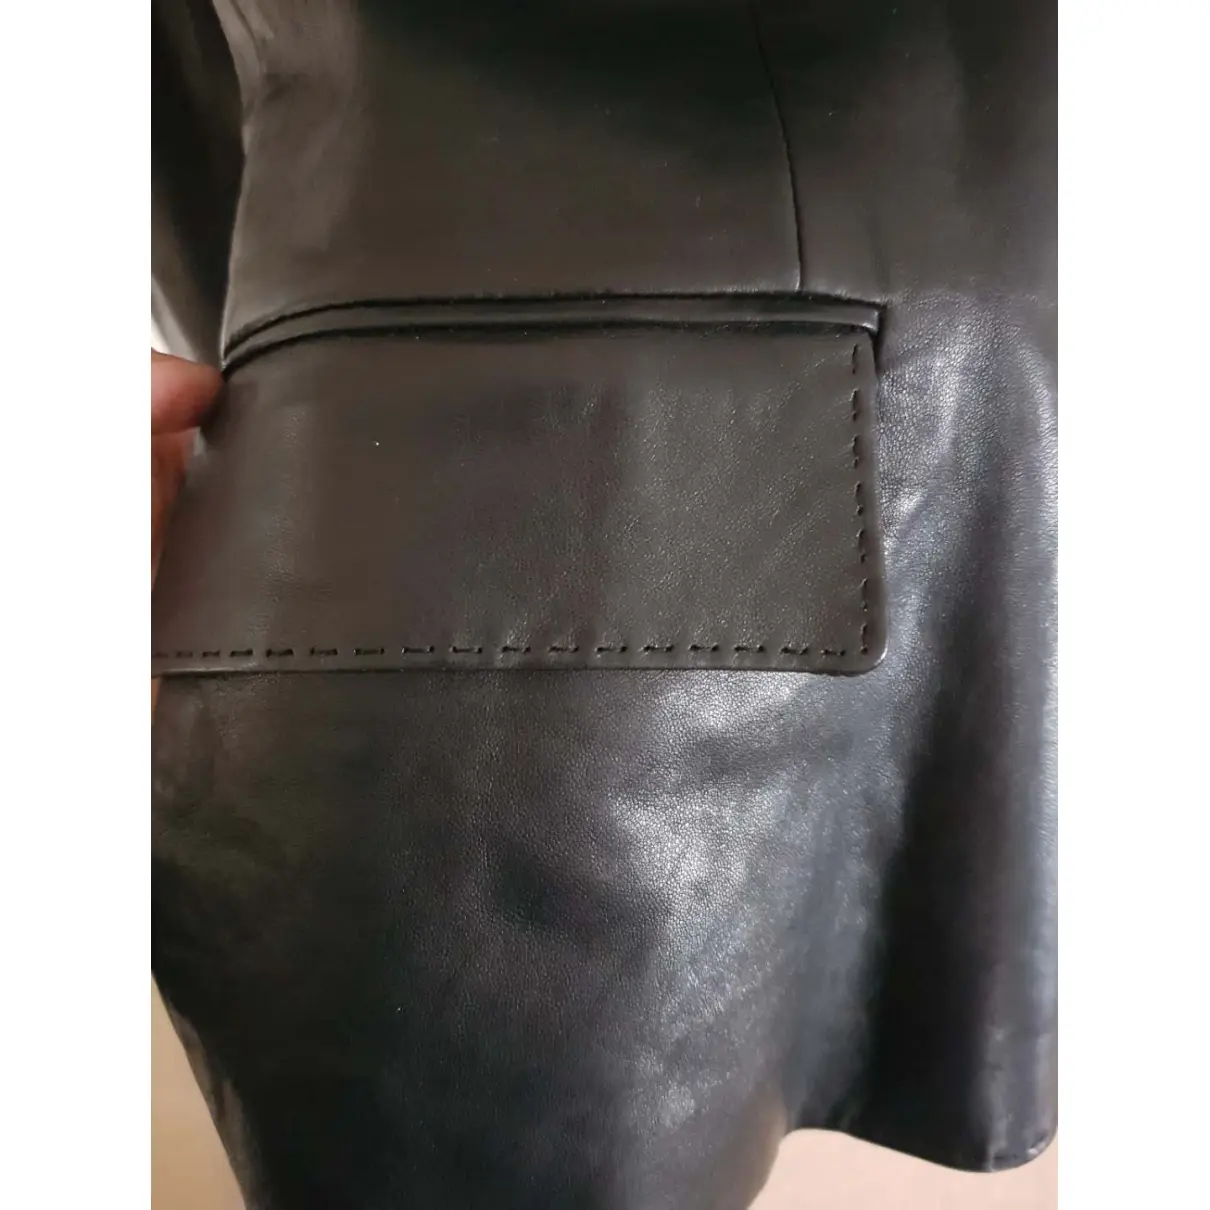 Leather biker jacket Ralph Lauren Collection